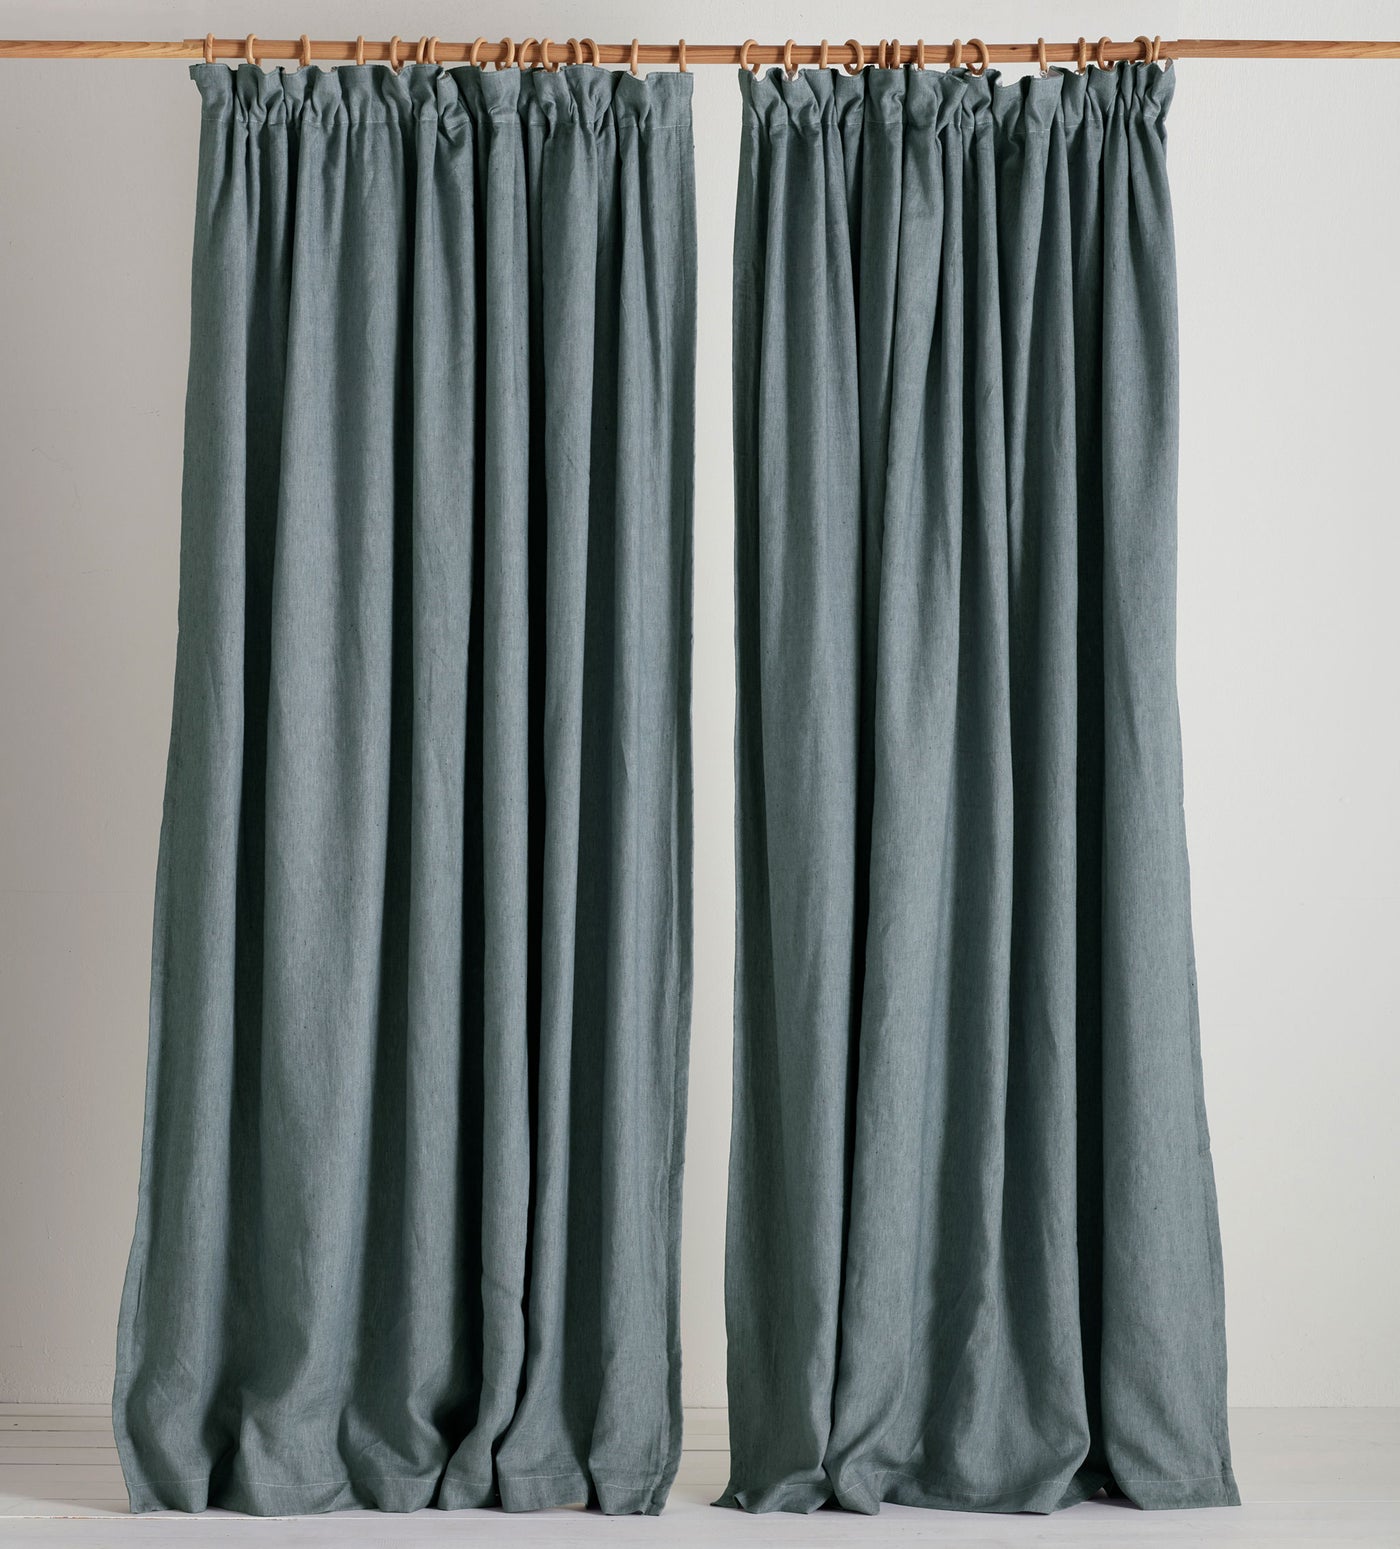 Darkest Spruce Twill Cotton Linen Blackout Curtains (Pair)